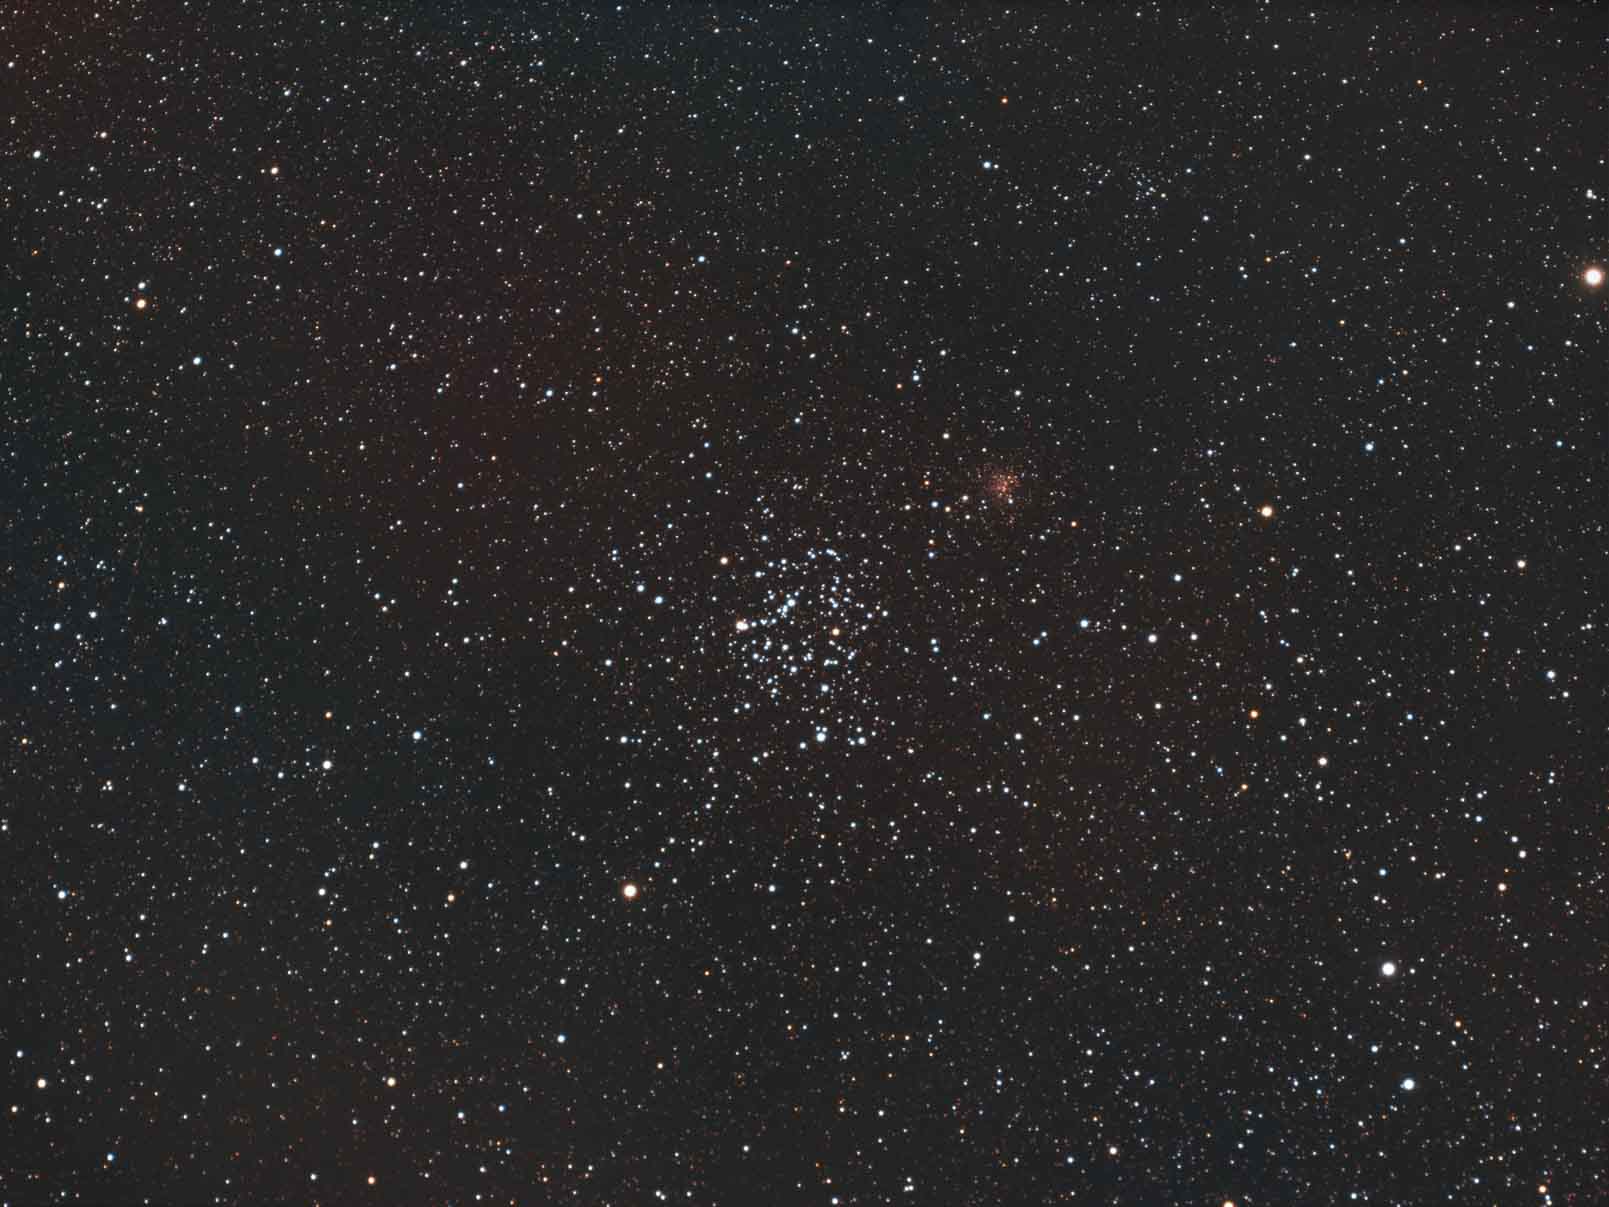 20201227-20201228 Messier 35